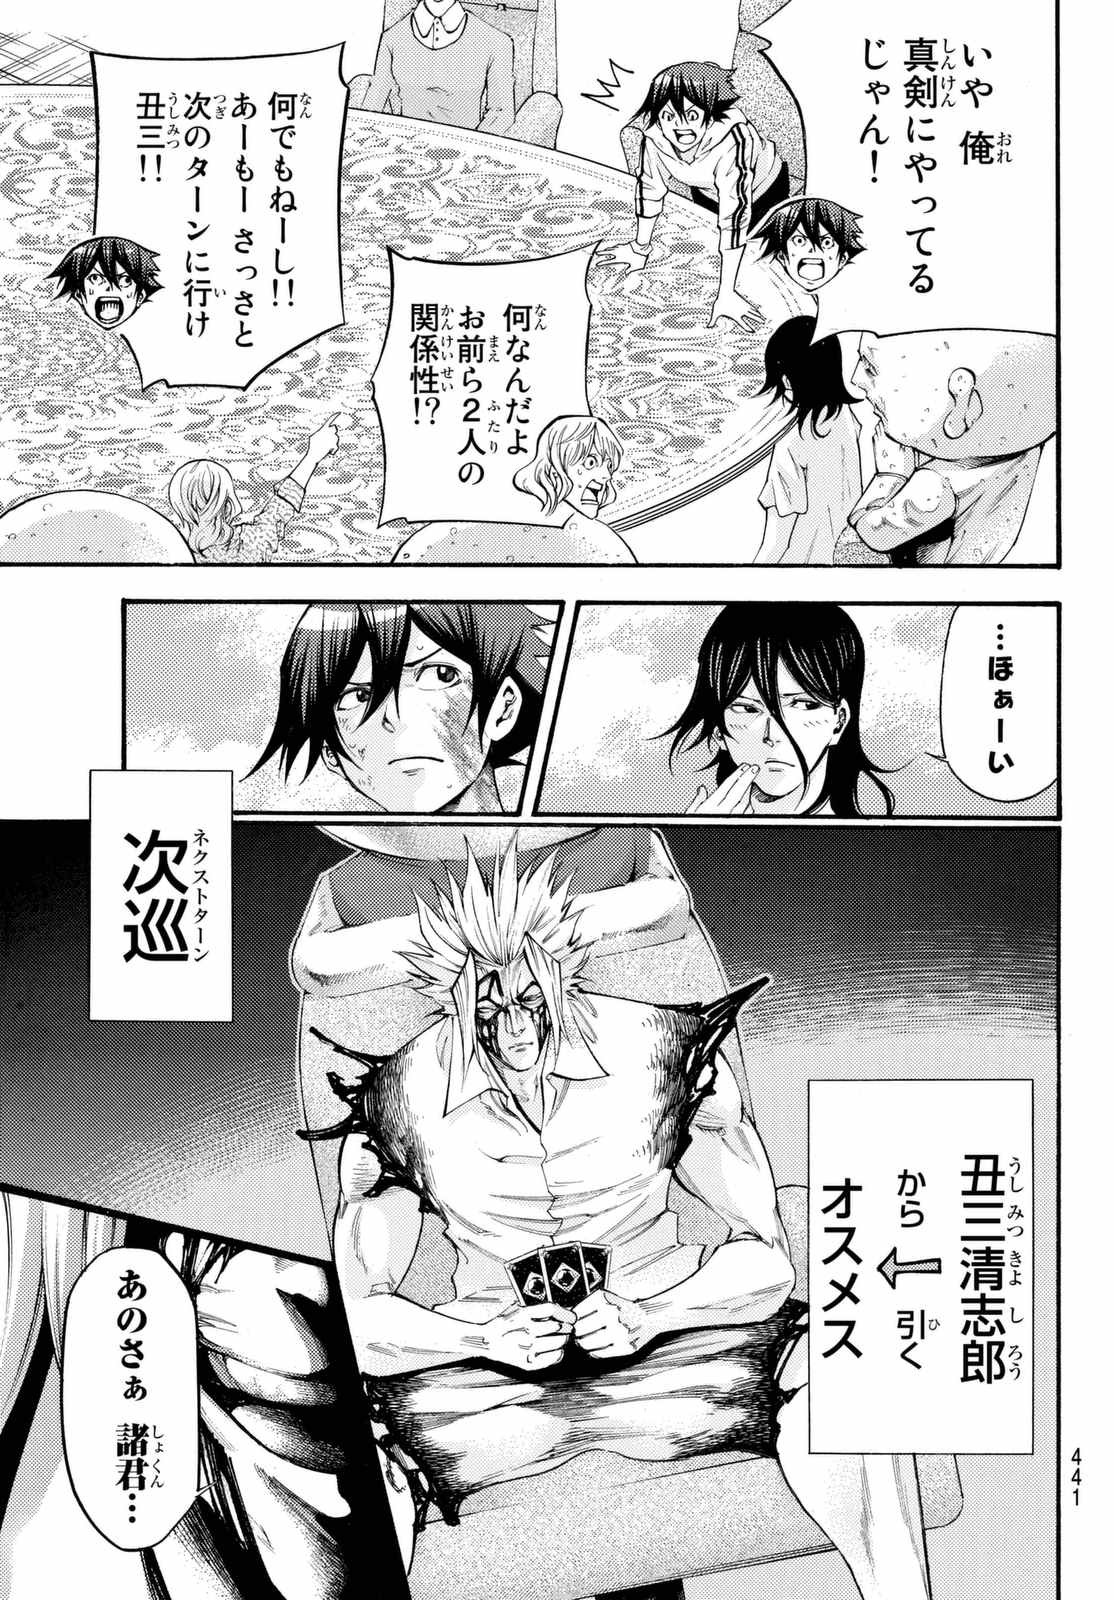 Kamisama no Ituori - Chapter 164 - Page 3